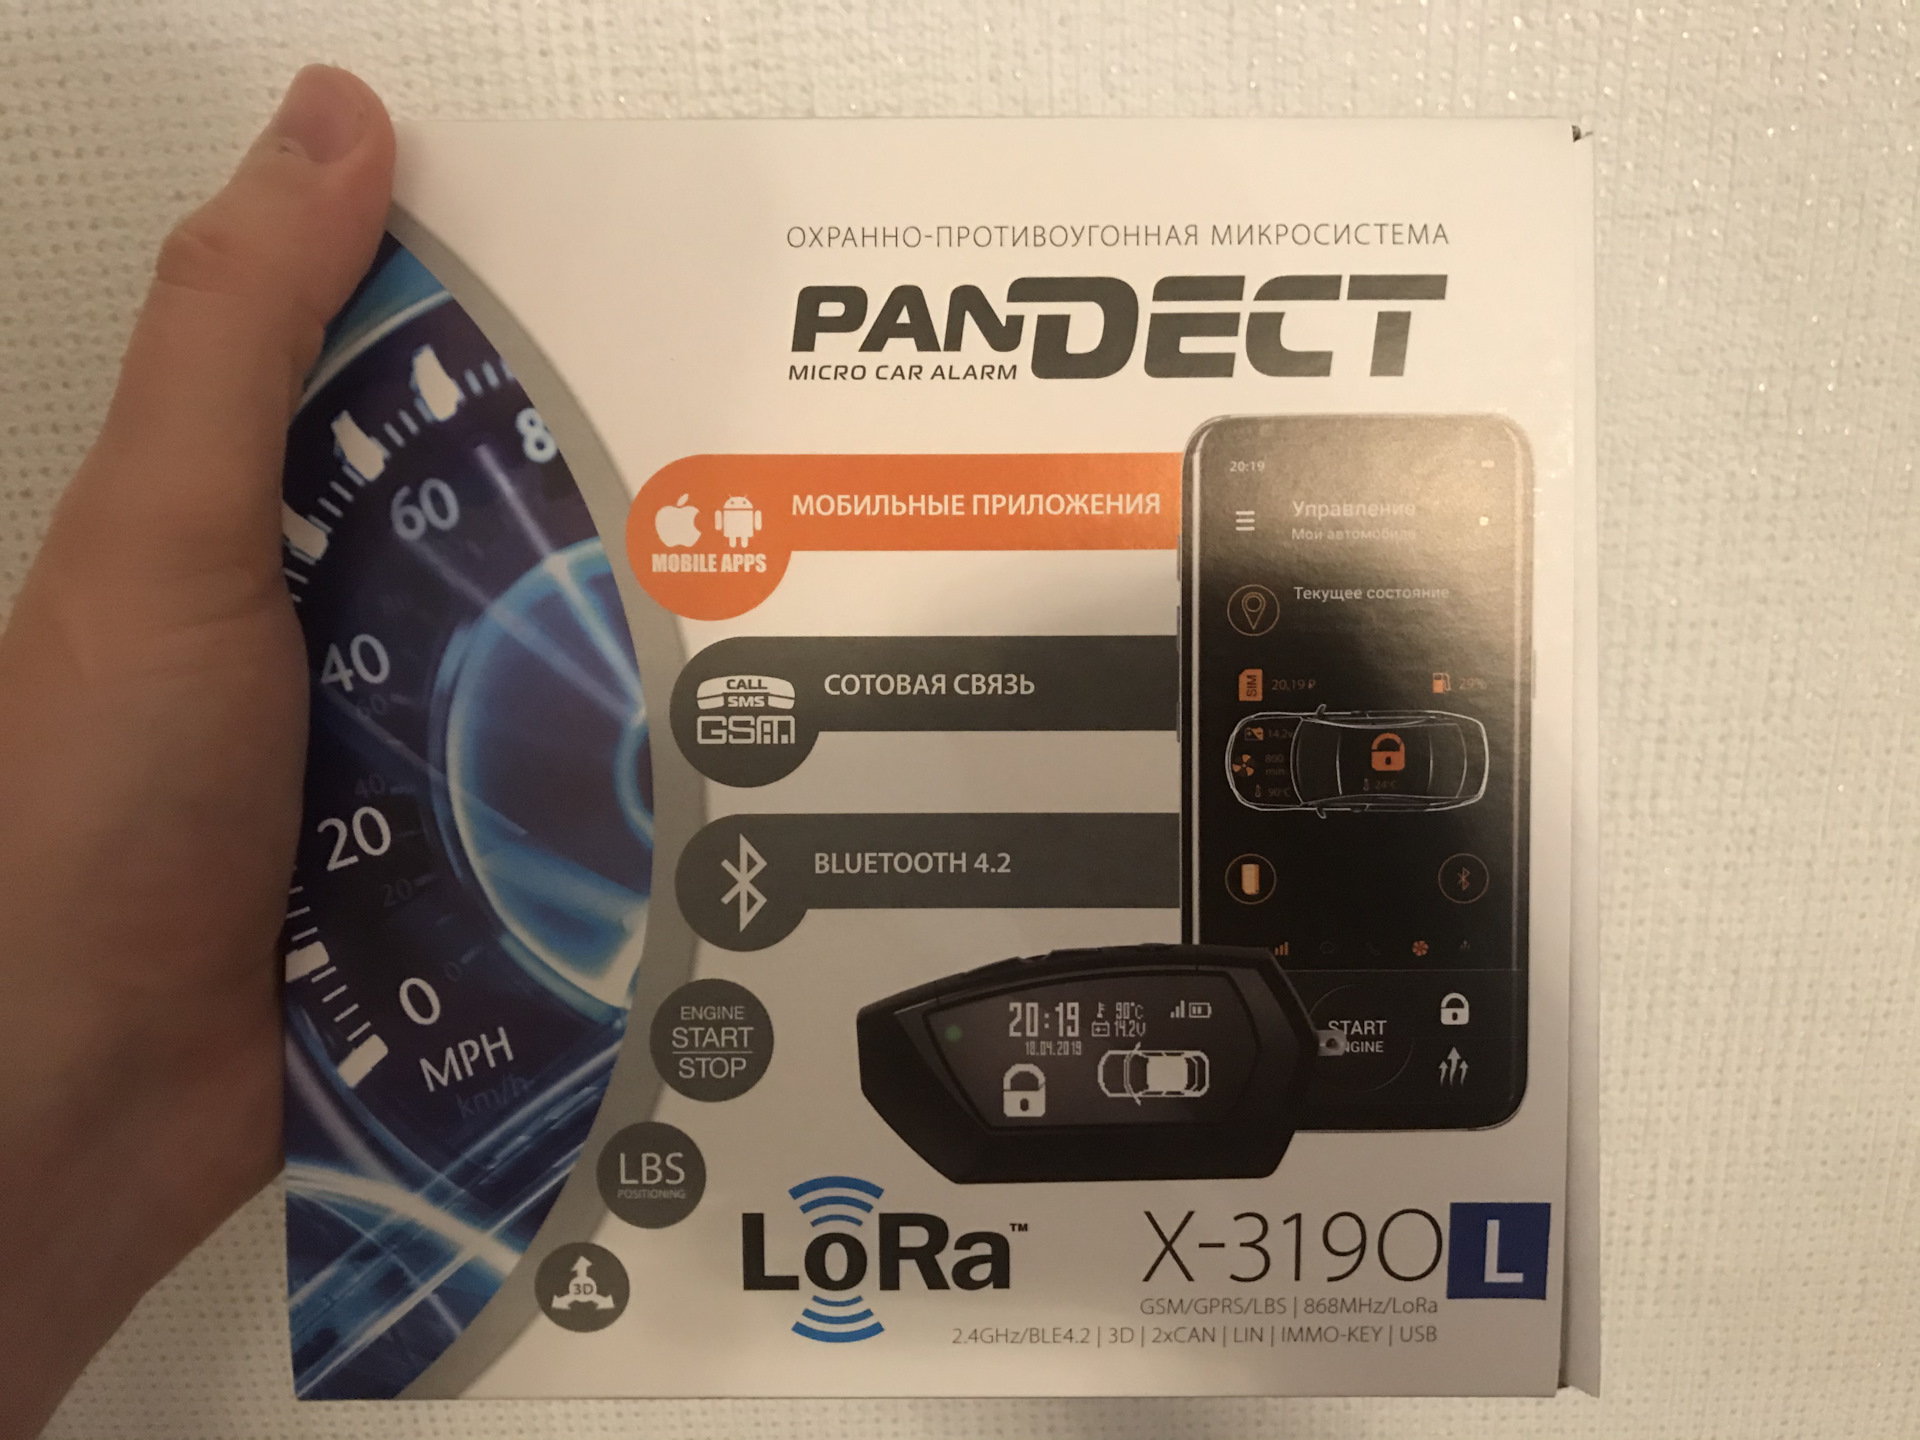 Pandora Pandect x-3190. Pandect x-1800l v3. Pandect x-3190l год.